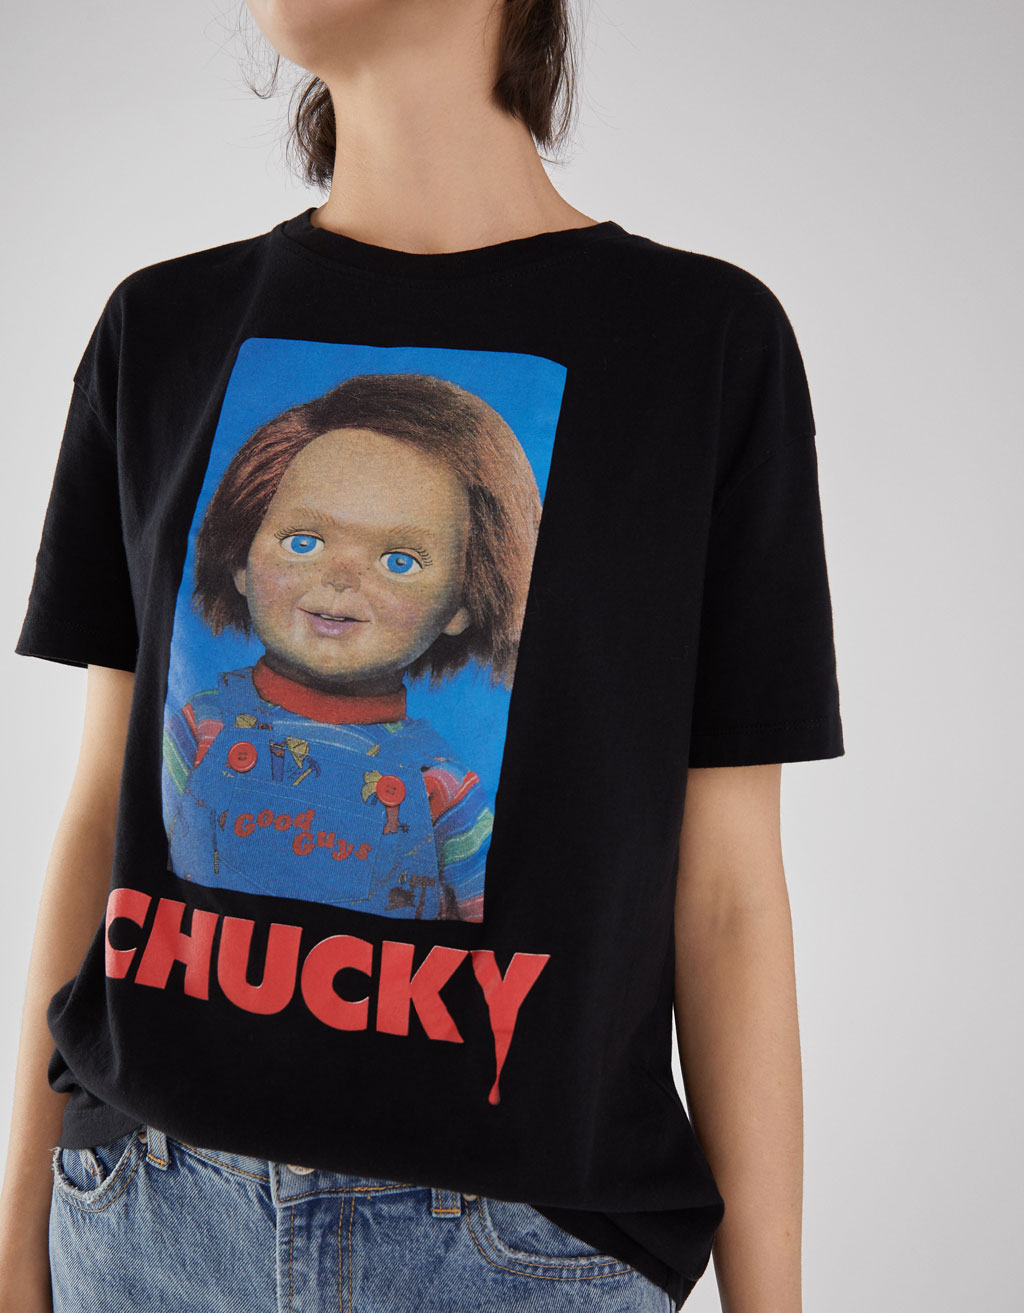 Camiseta de Chucky